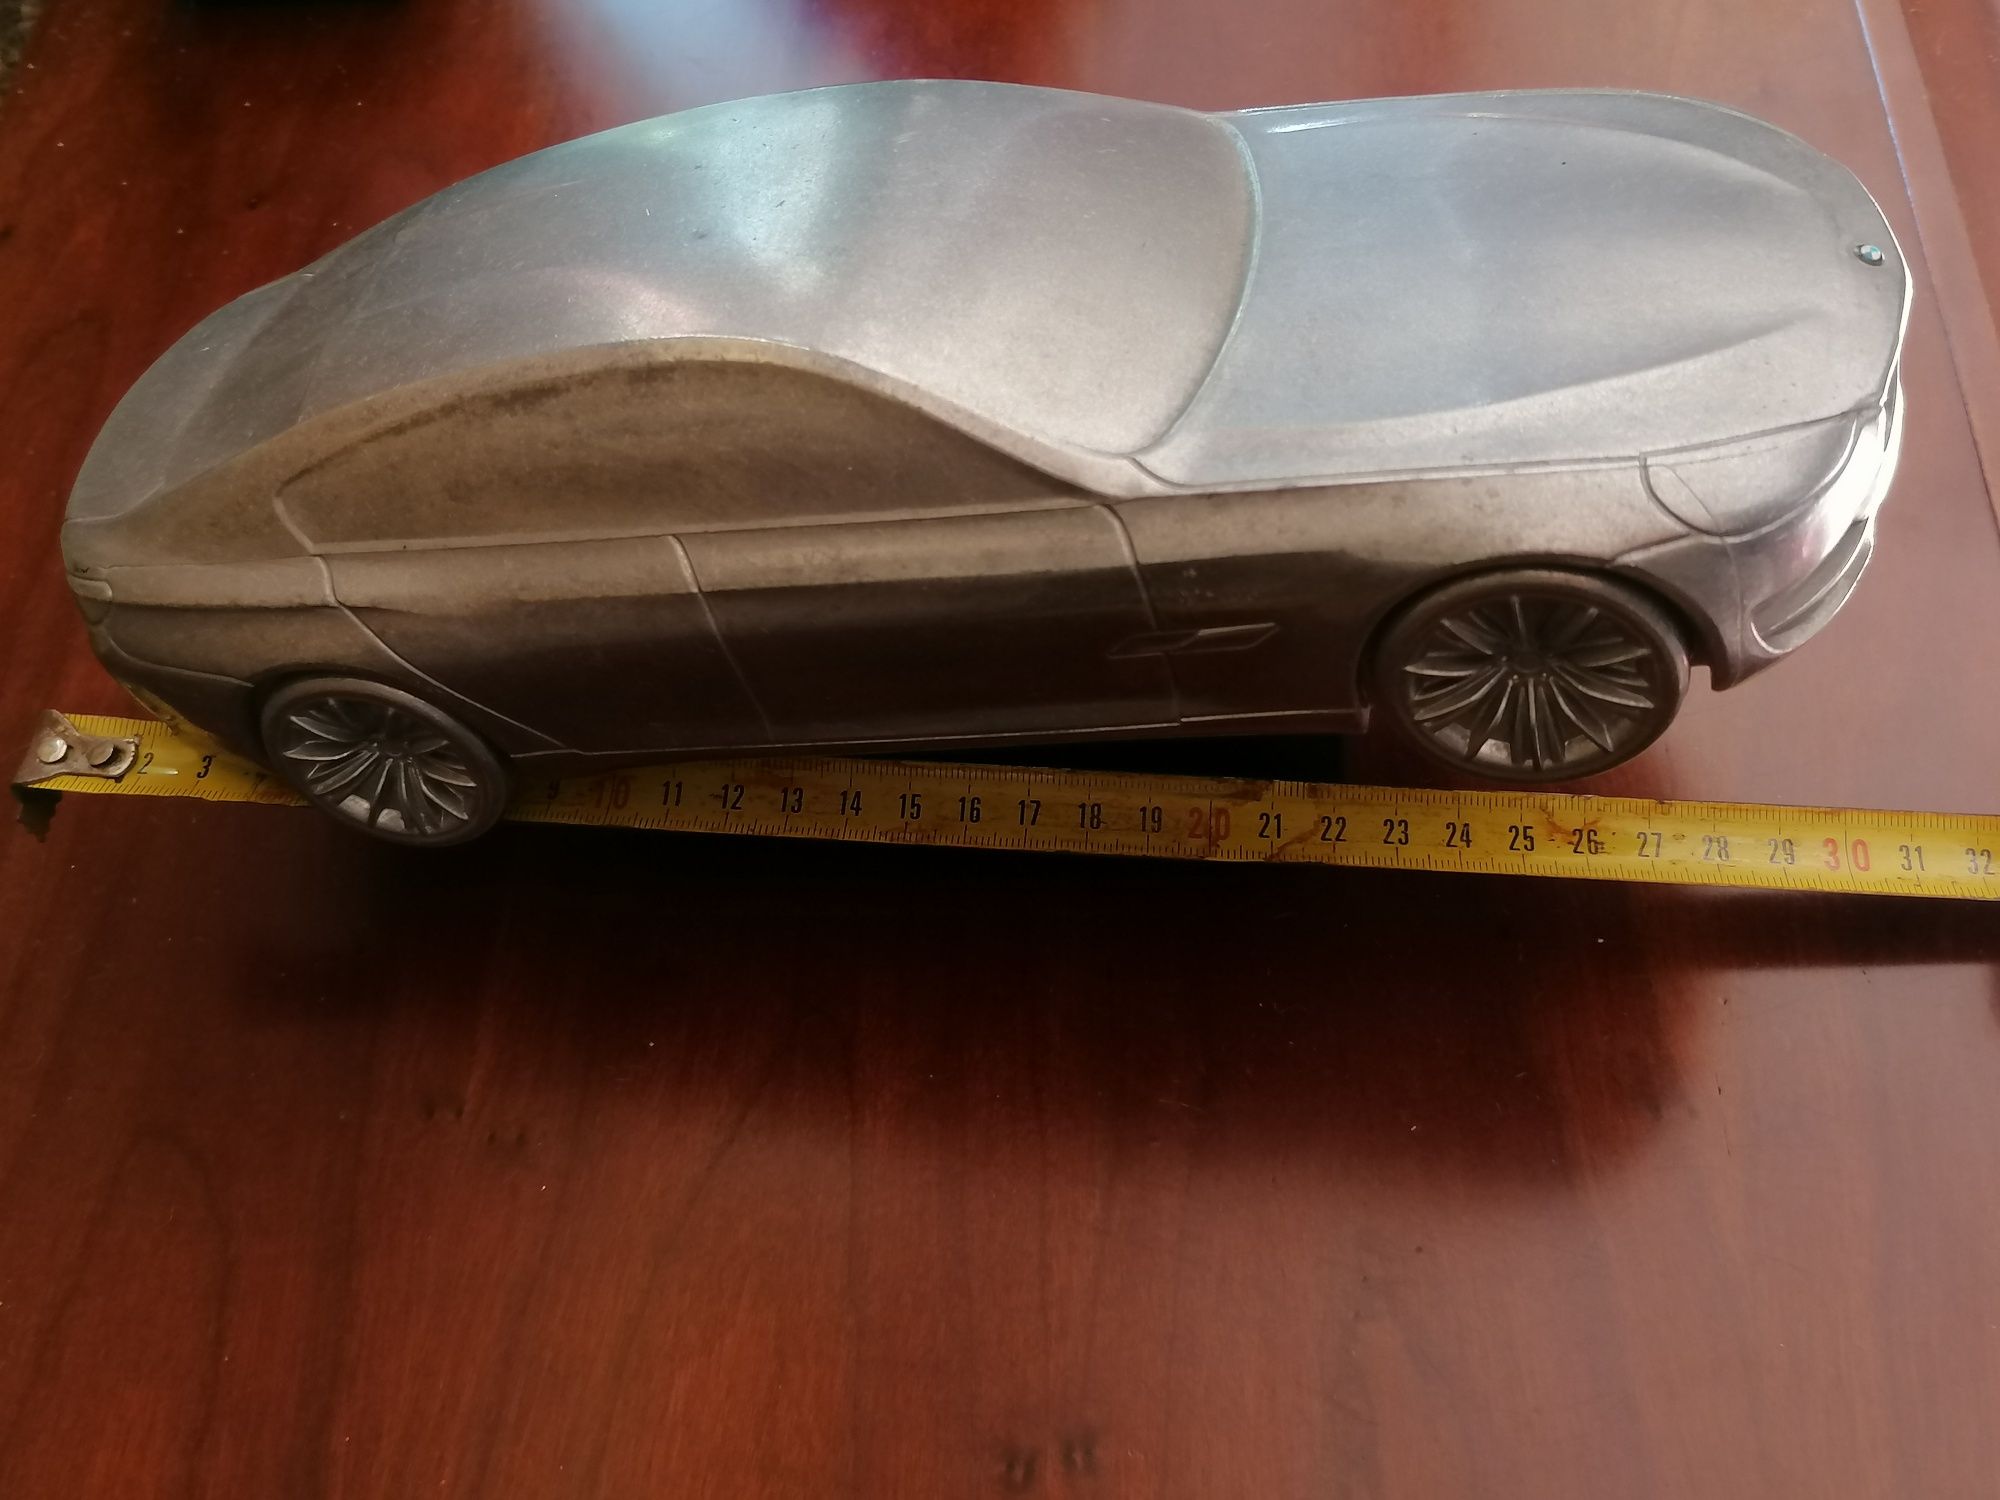 BMW Concept CS escala 1:18